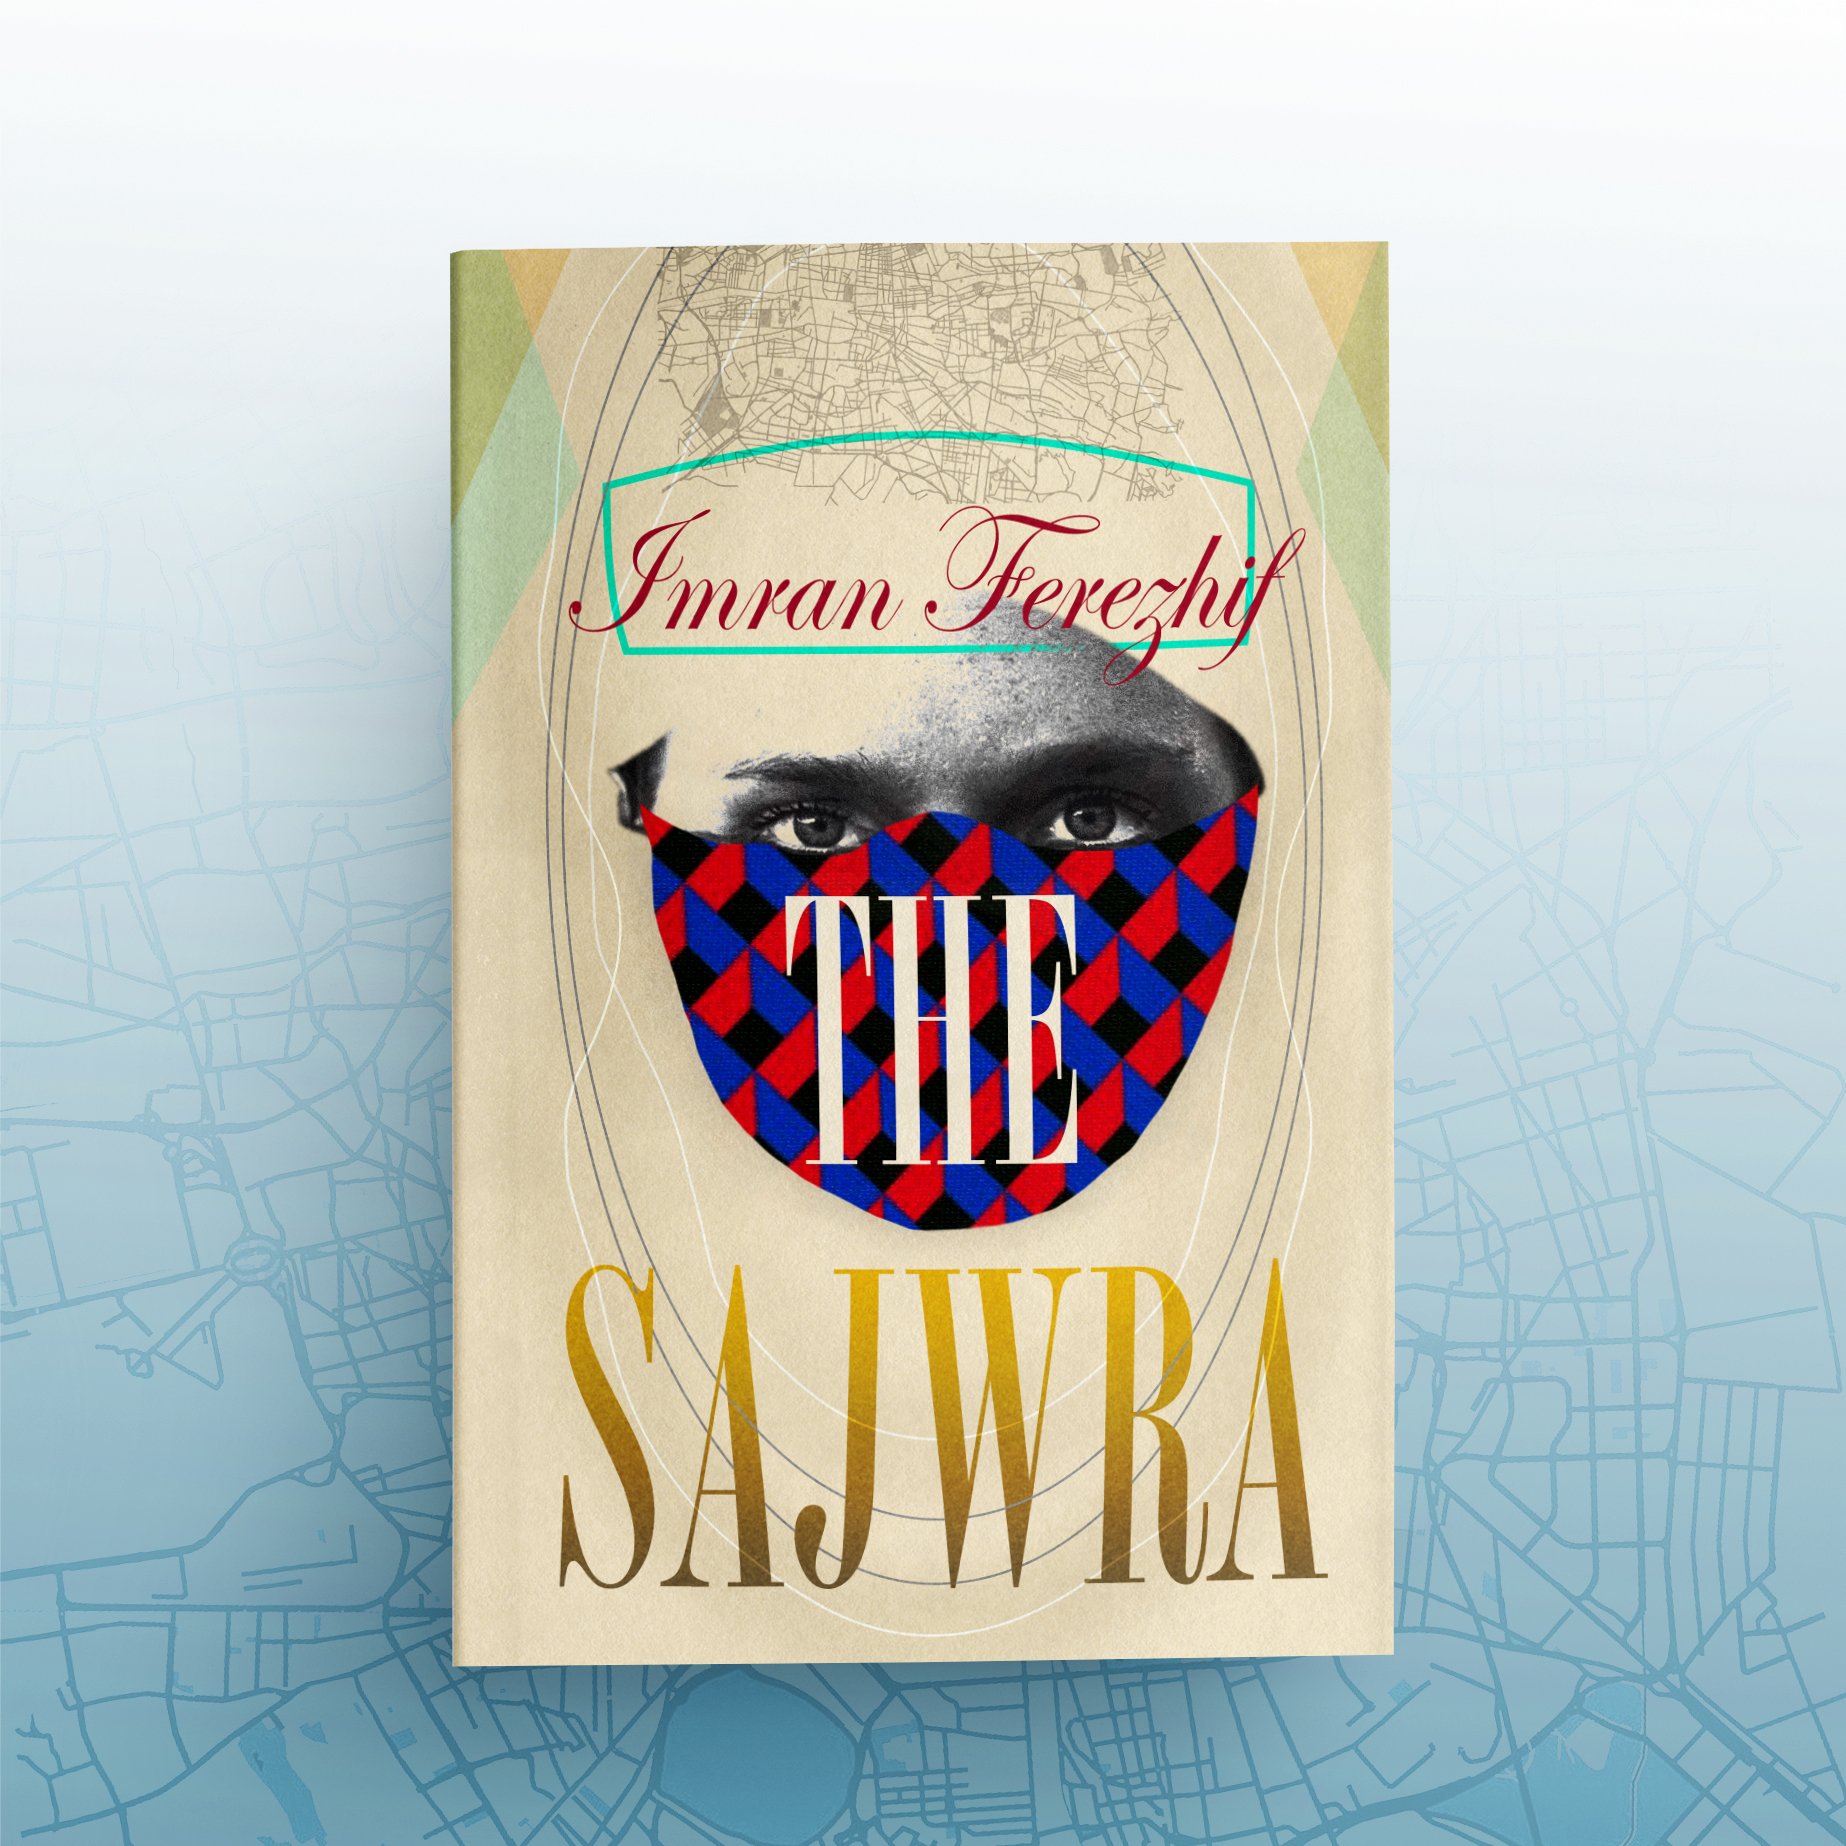 Sajwra Cover-Social3 copy.jpg